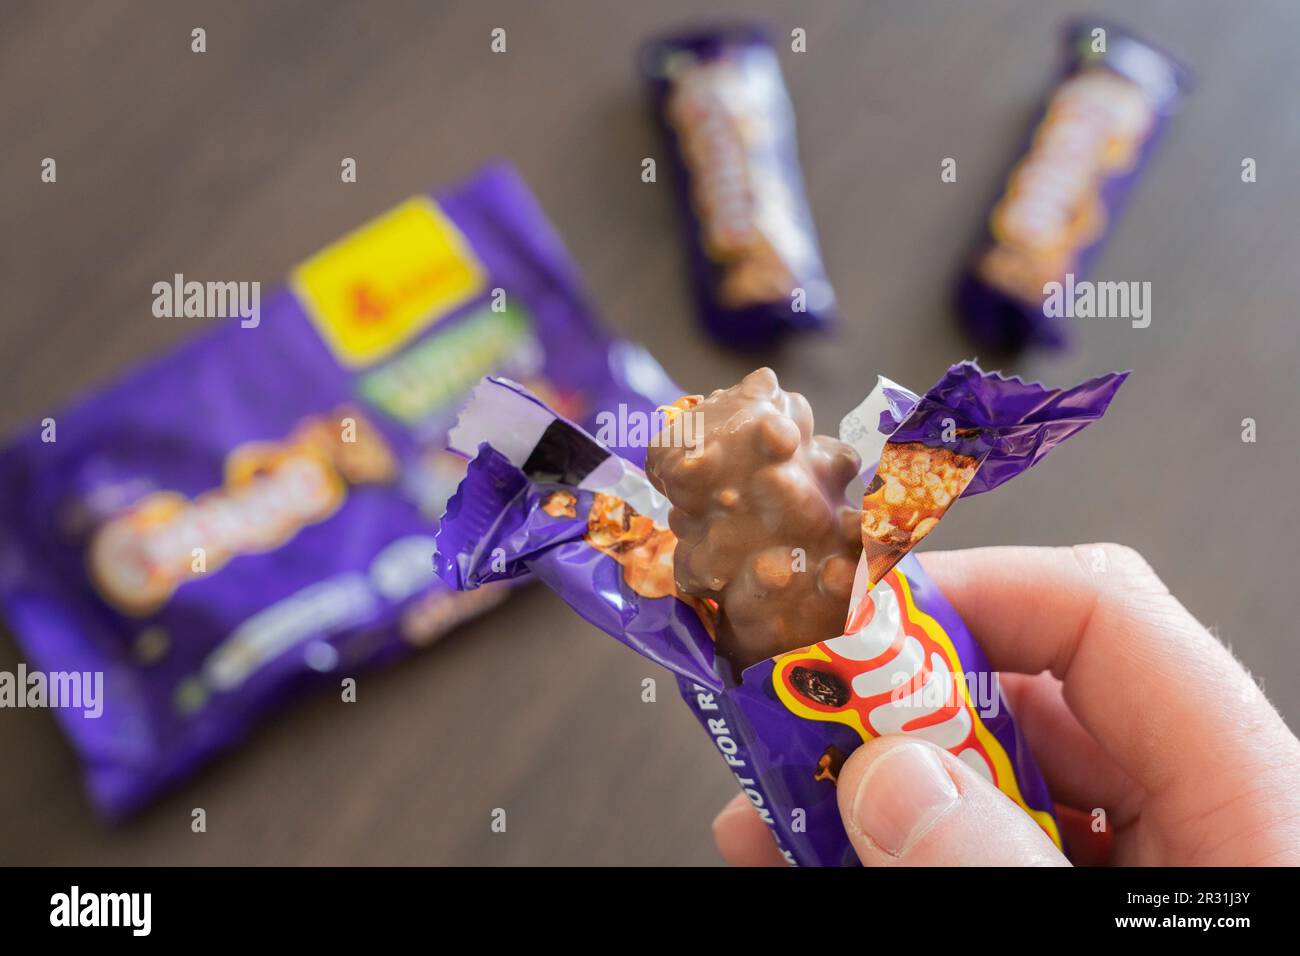 Die Hand eines Mannes, der einen ausgepackten Cadbury Picnic-Schokoriegel hält, der ihn essen will, England. Konzept: Fett und Zucker, Snack, ungesunde Lebensmittel Stockfoto